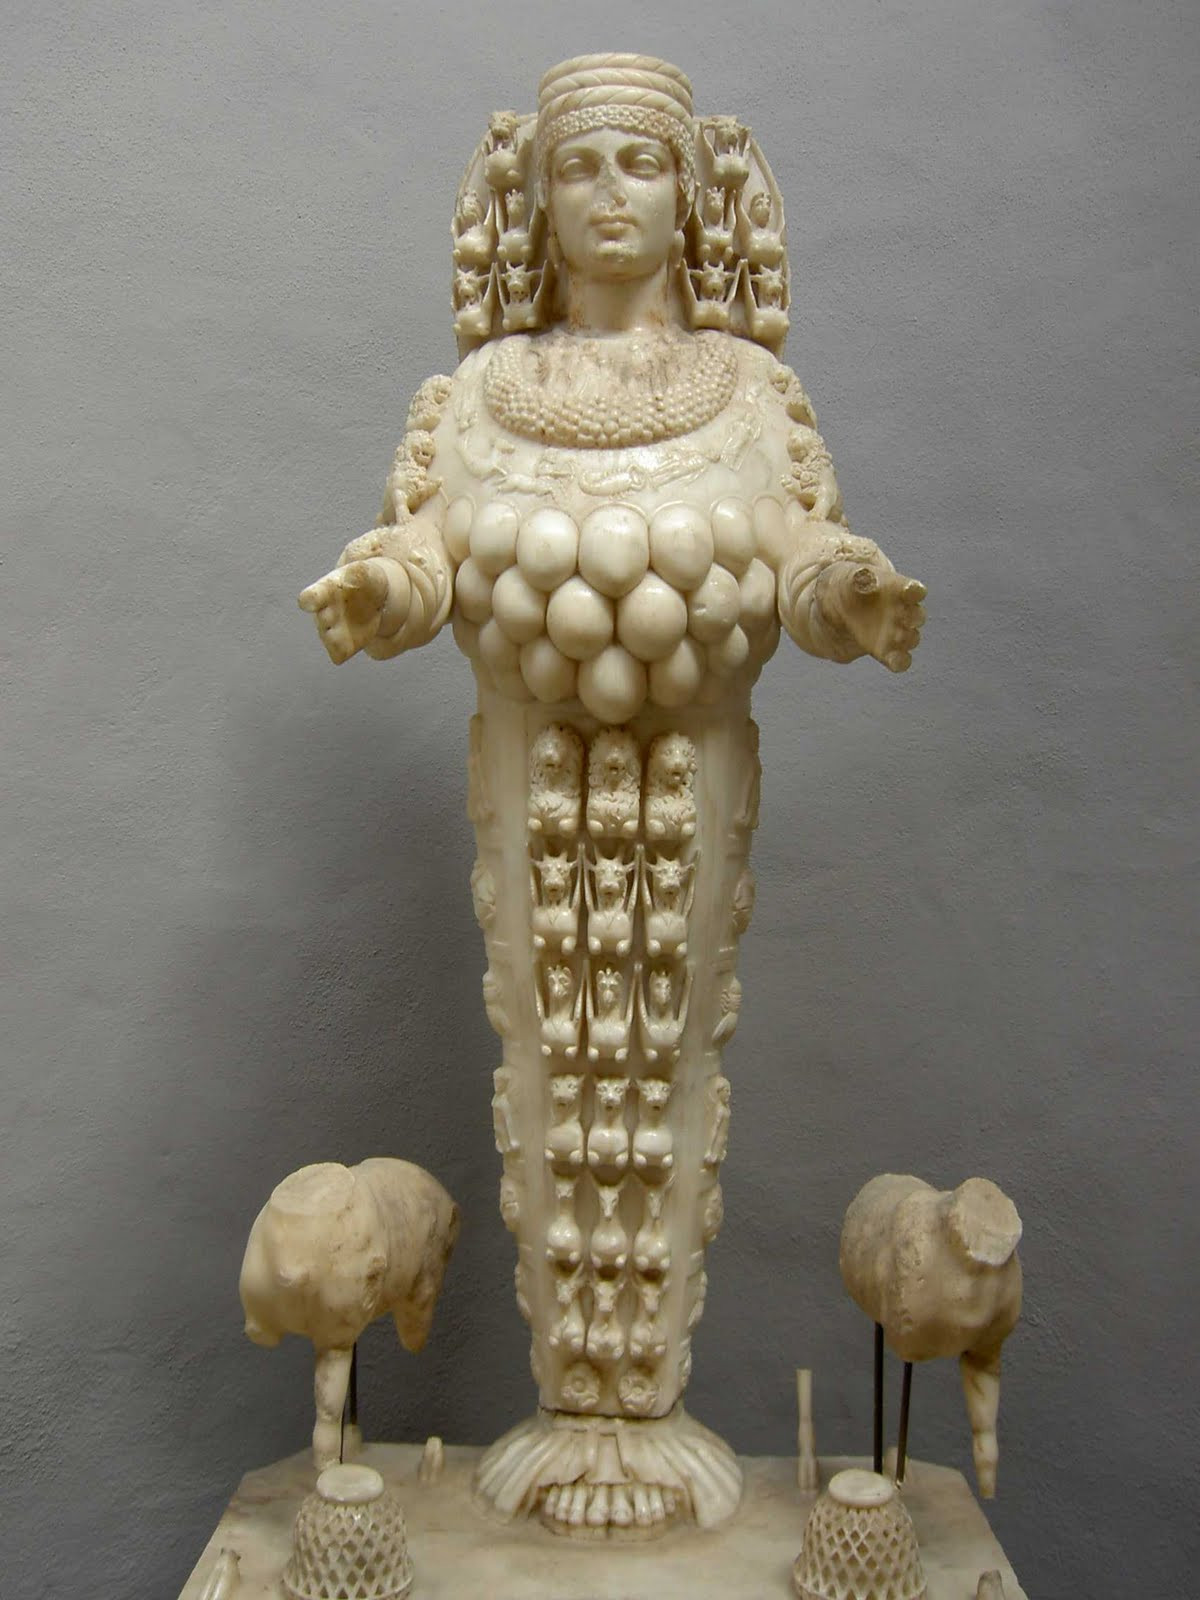 Артемида Эфесская. Эфесский археологический музей. Турция